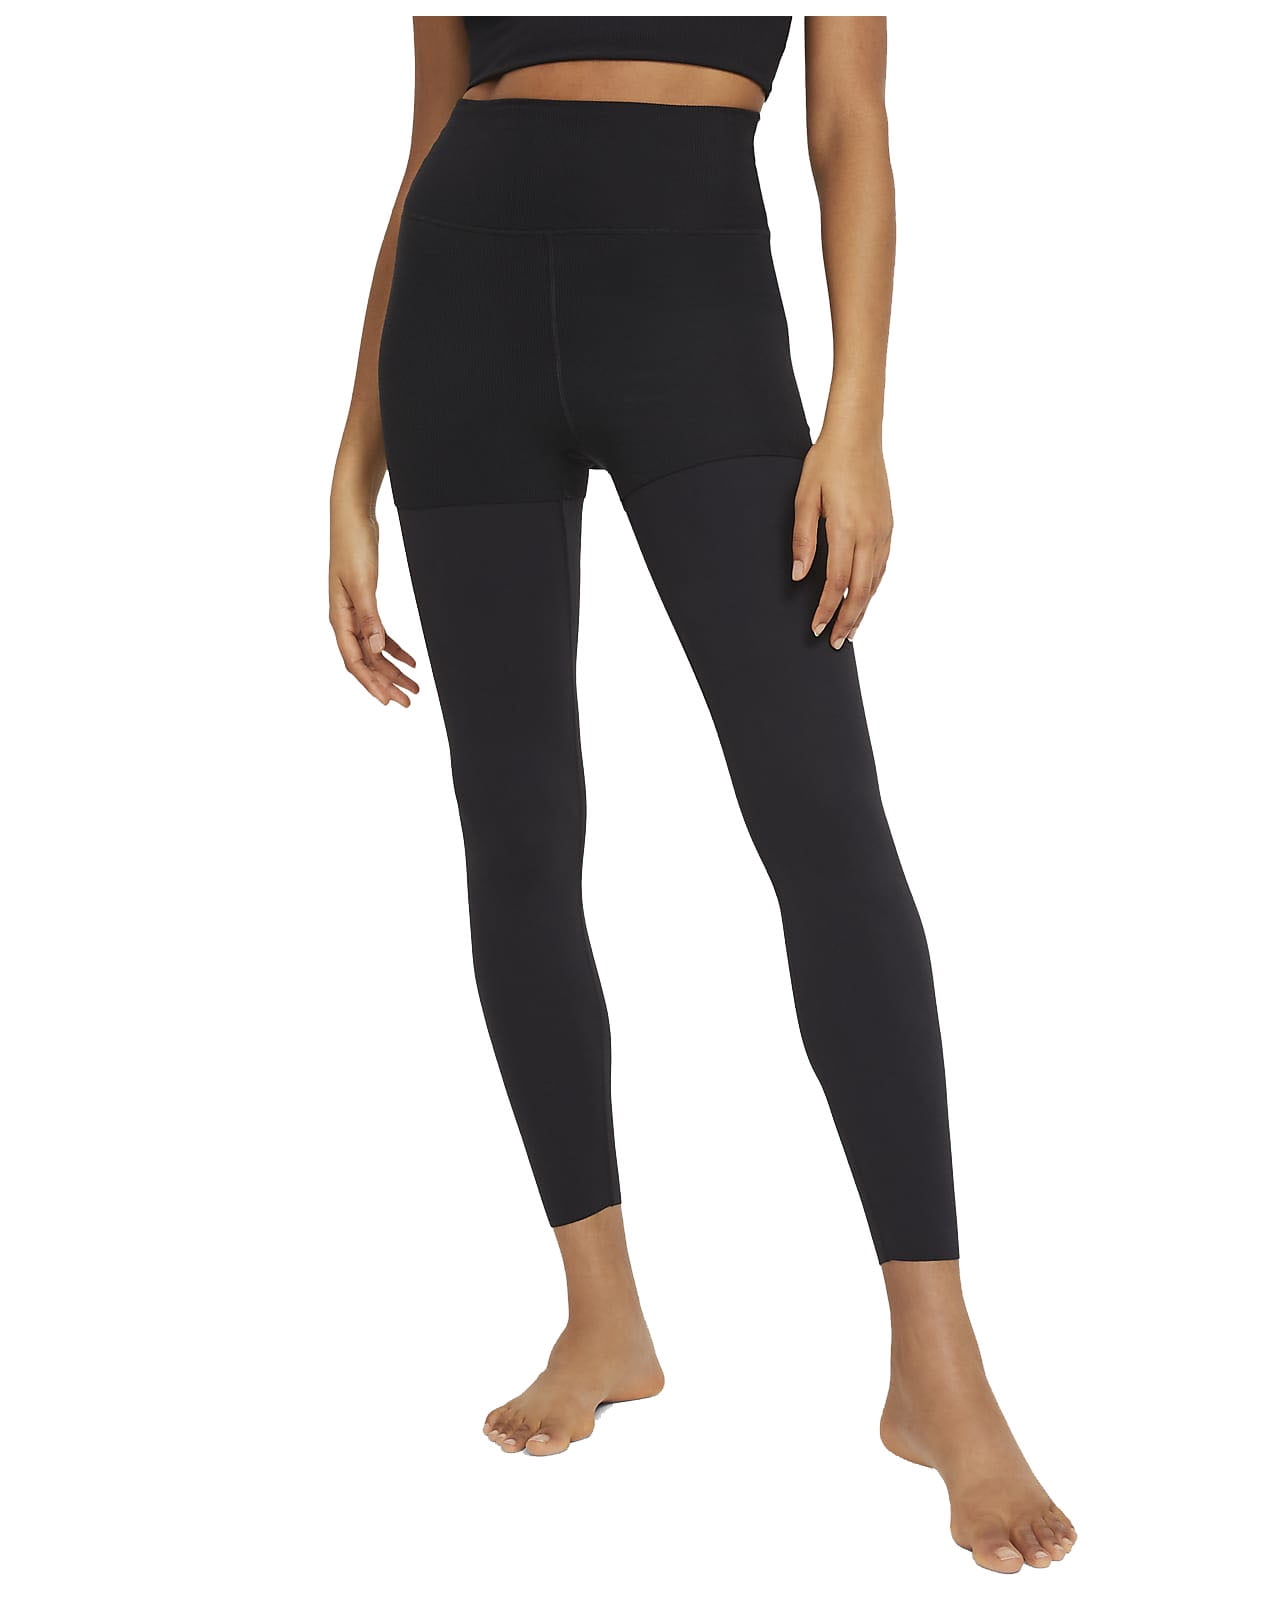 Nike Women's Yoga Luxe Layered 7/8 Leggings (Black, X-Small